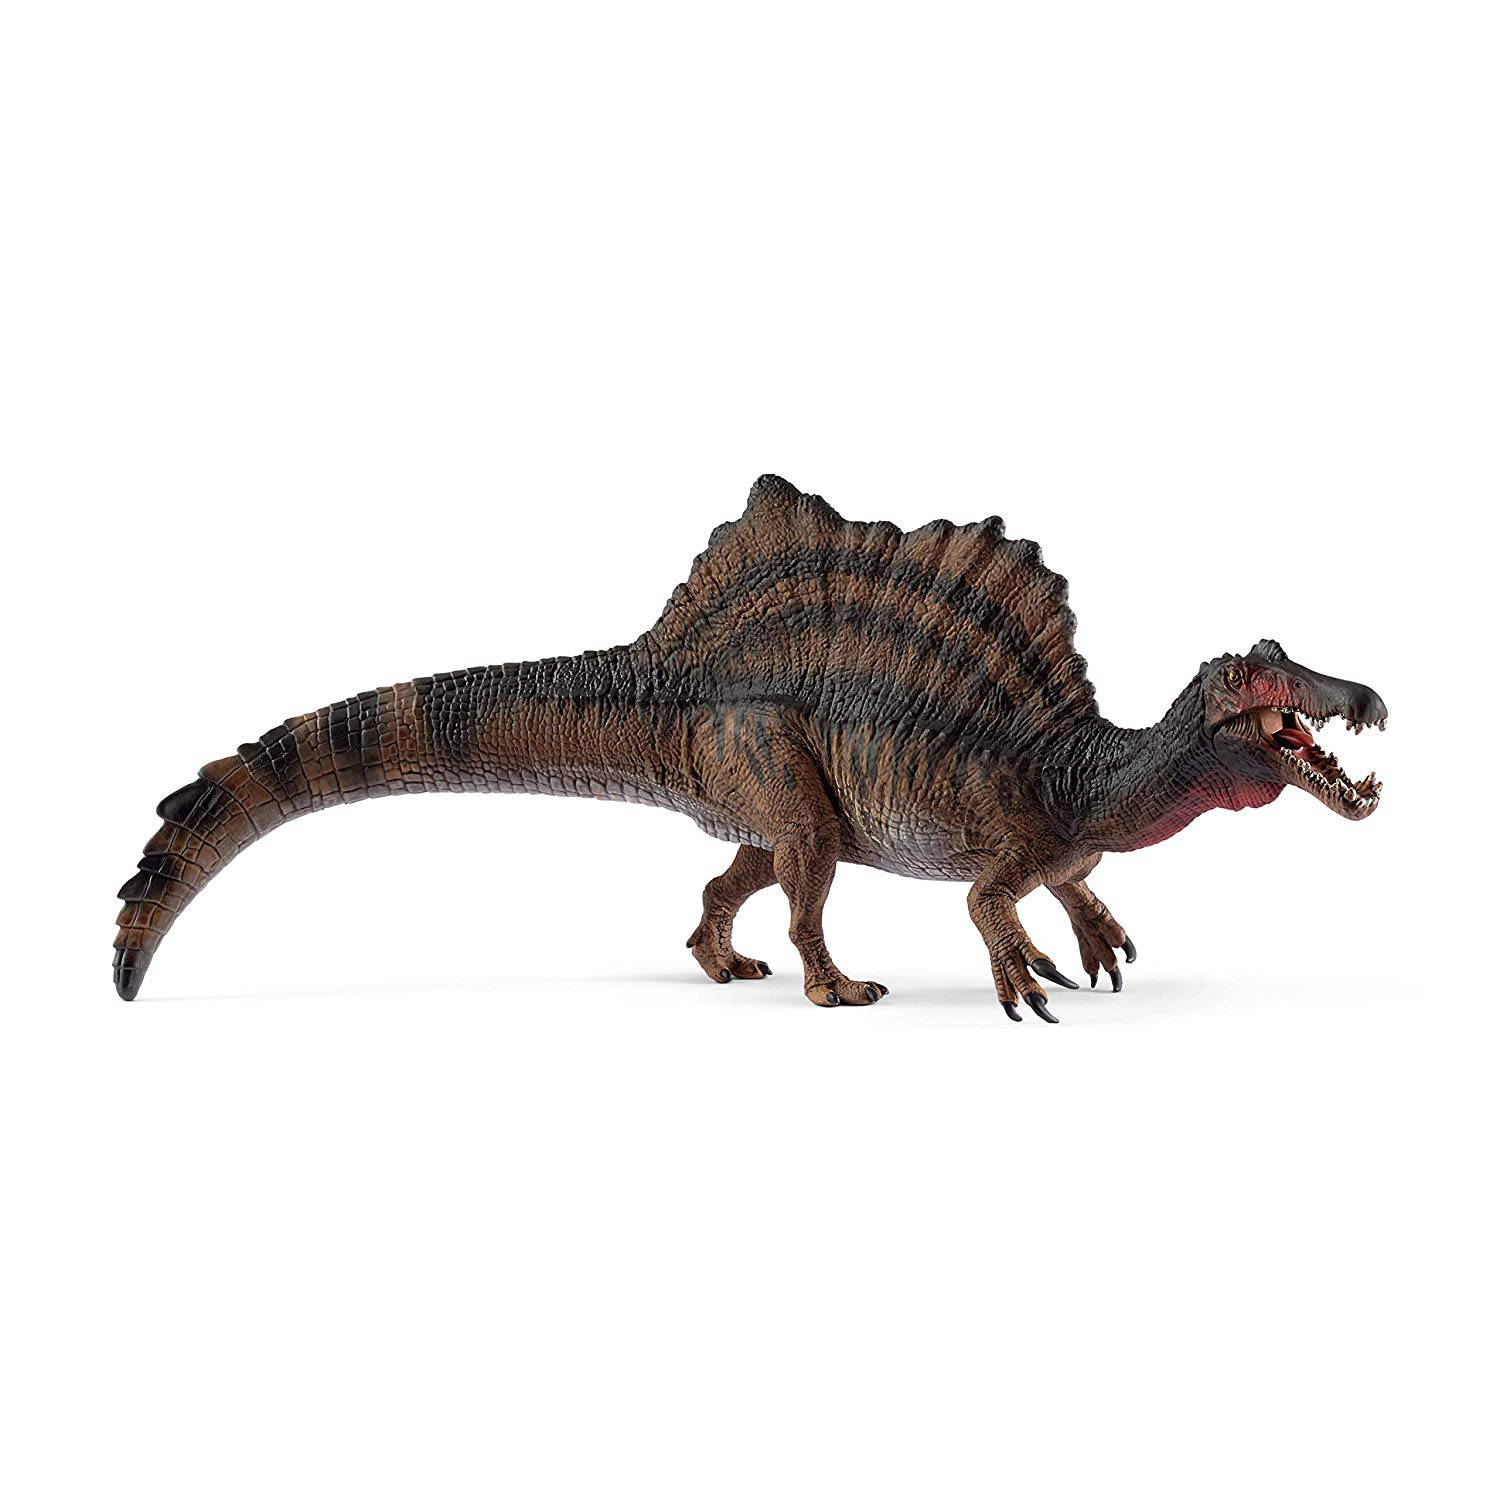 Schleich Dinosaurs 15009 Spinosaurus